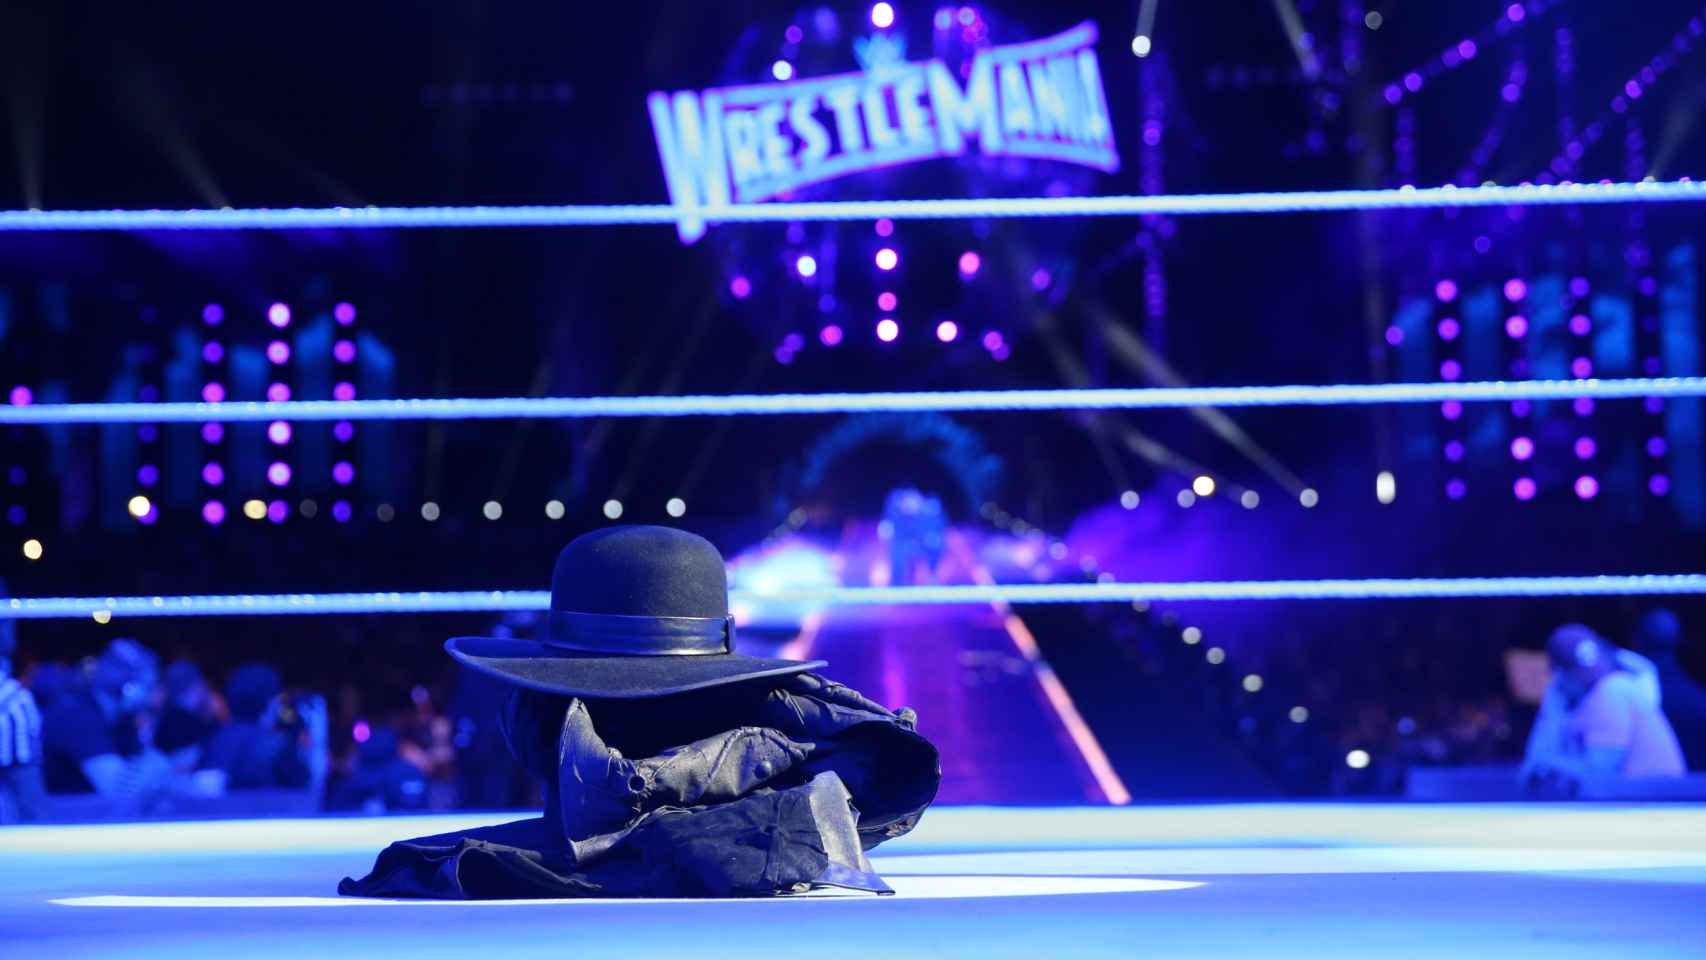 La despedida de Undertaker en Wrestlemania 33